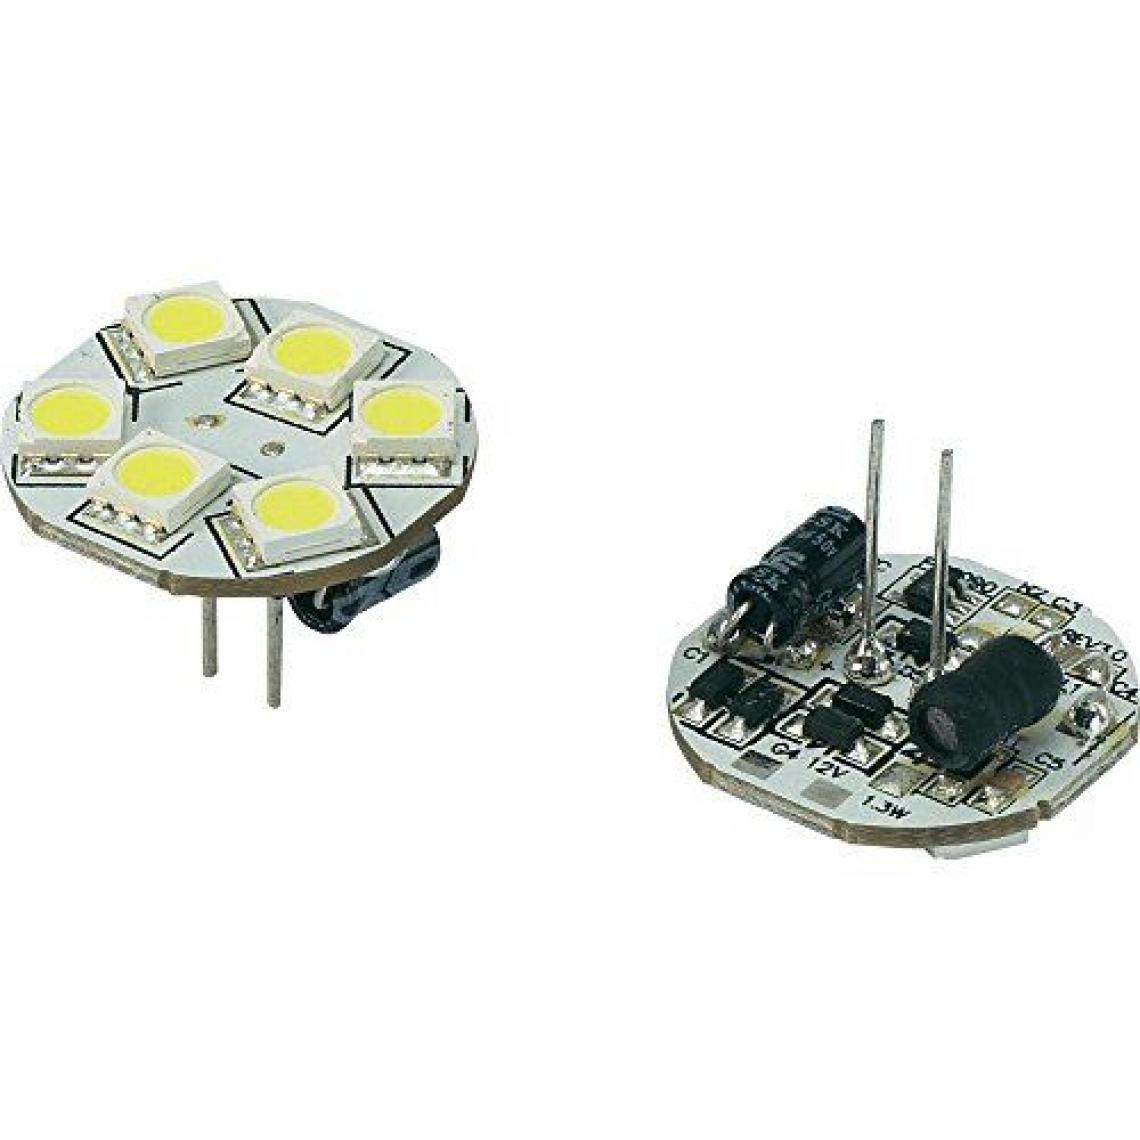 Inconnu - Ampoule LED unicolore G4 Renkforce 792396 à broches 1.3 W = 10 W blanc froid (Ø x L) 23 mm x 23 mm EEC: n/a 1 pc(s) - Ampoules LED